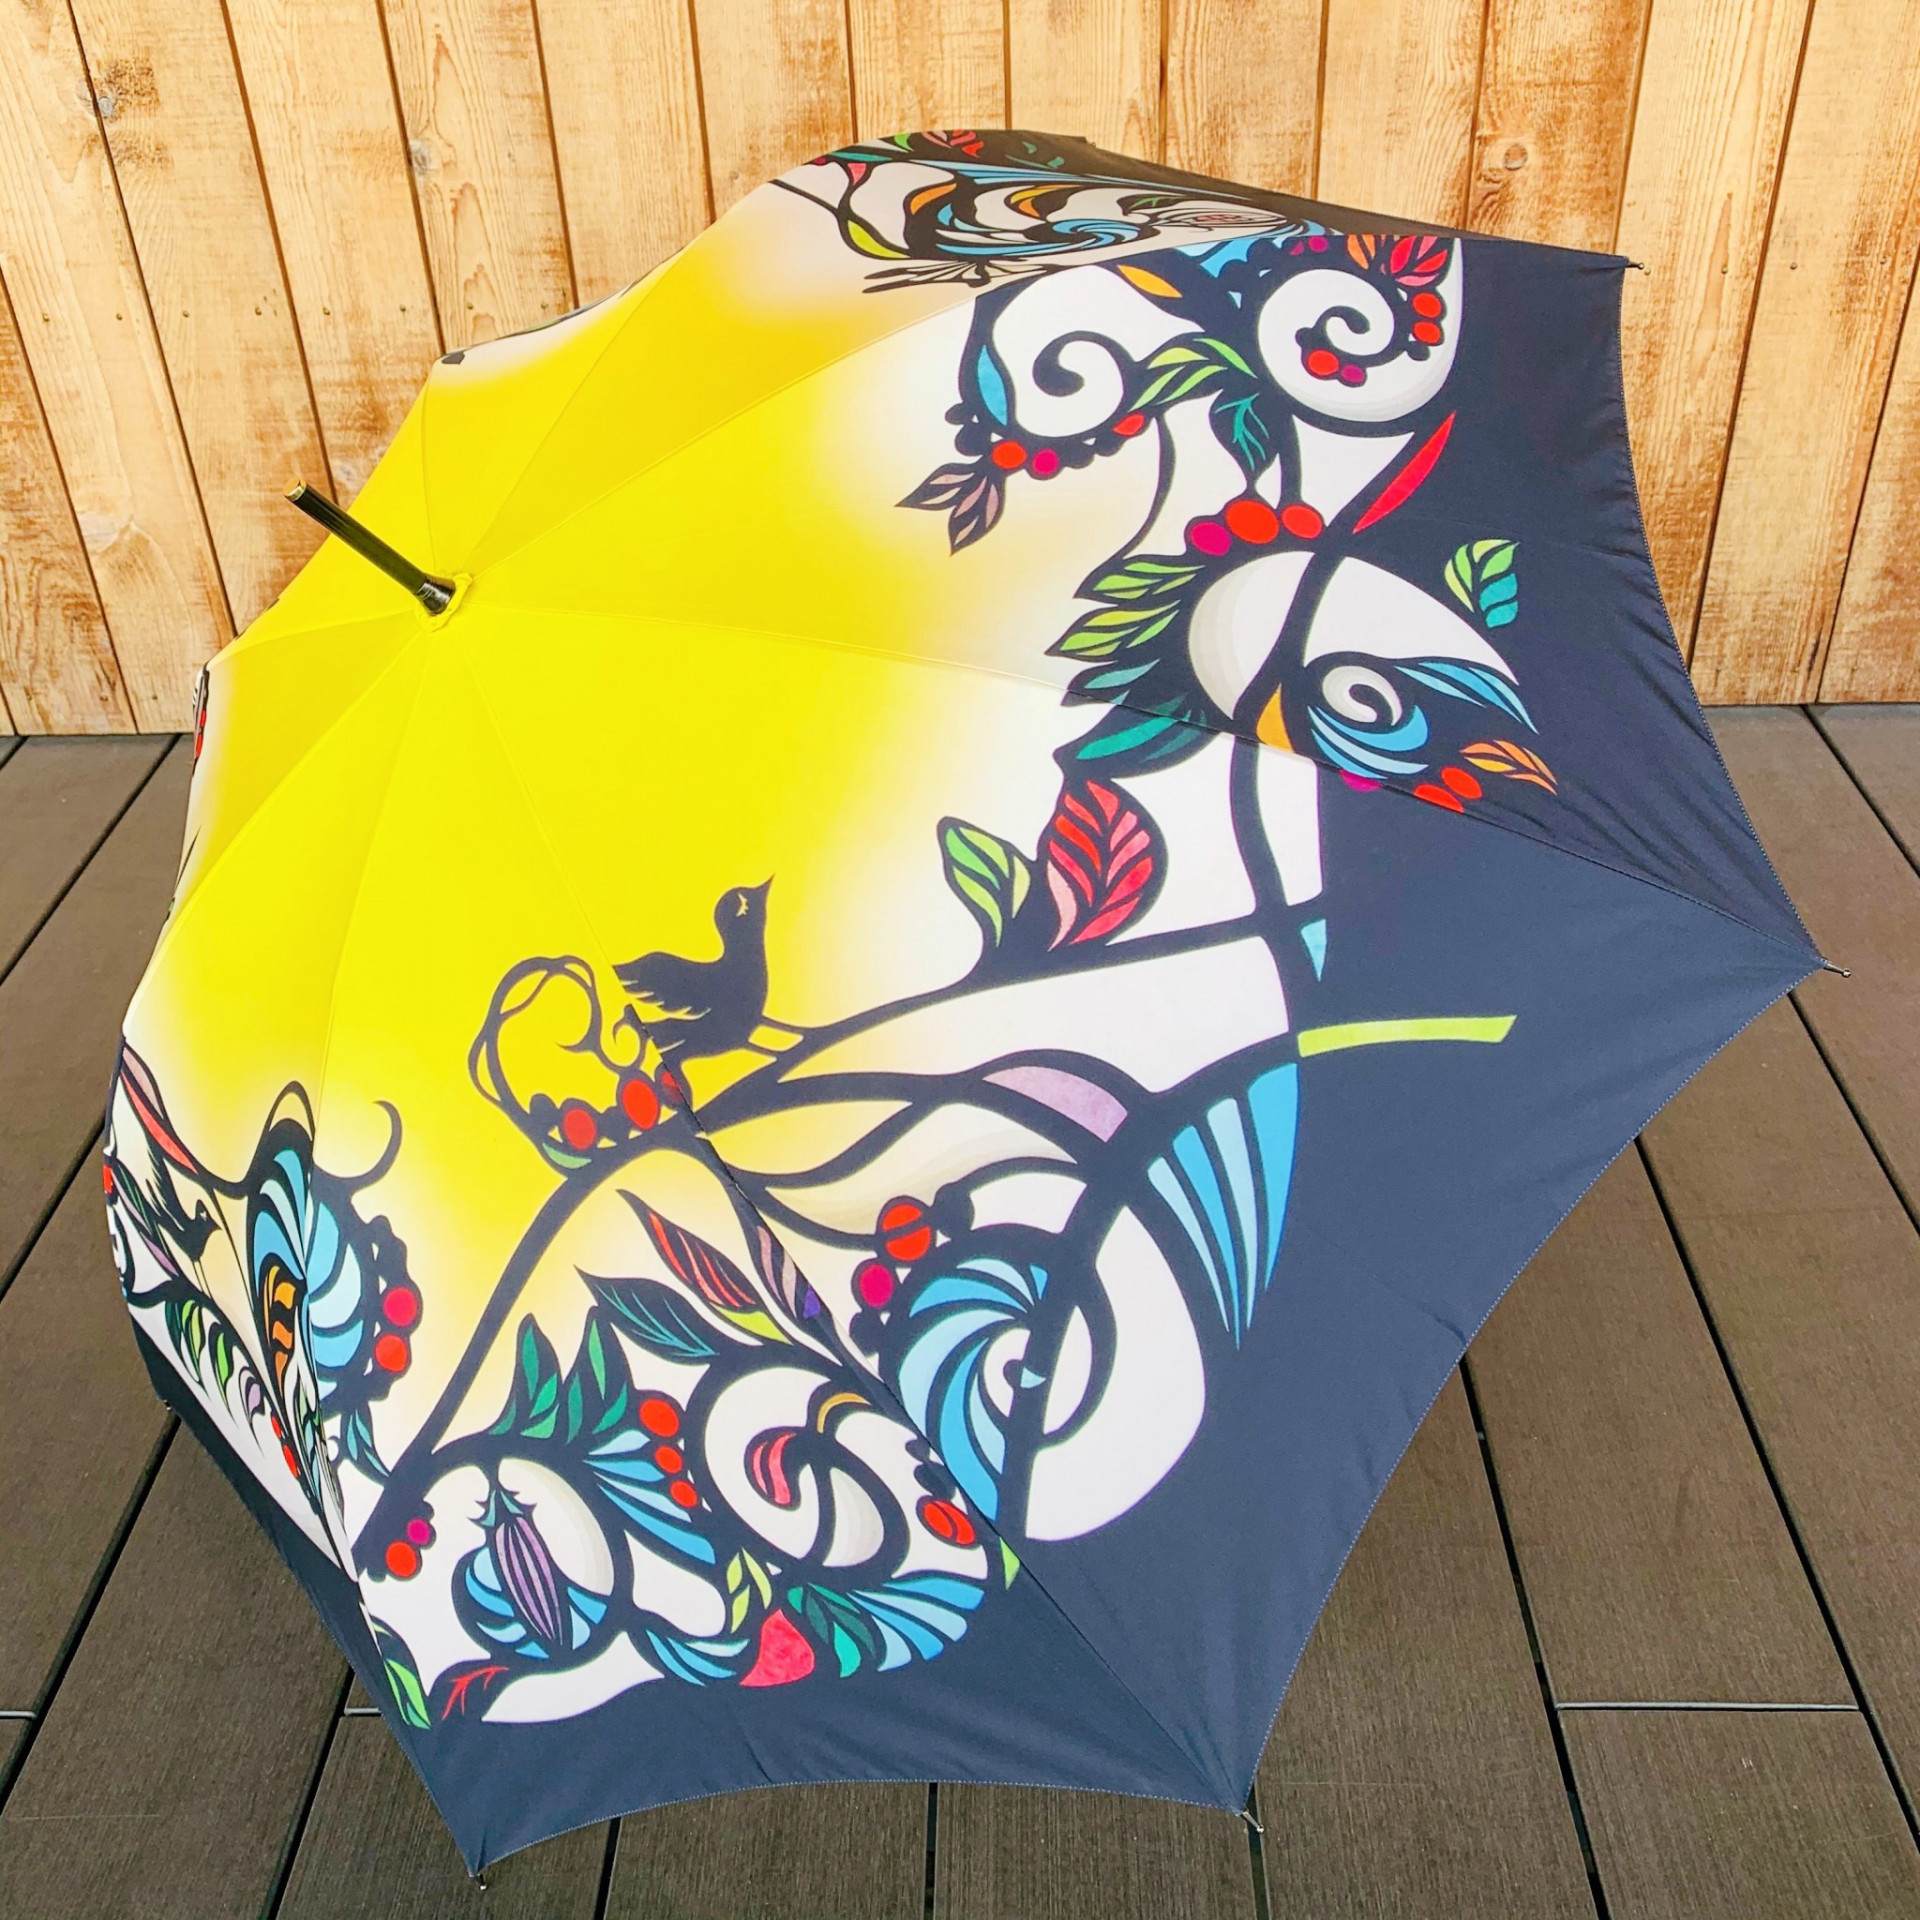 晴雨兼用で使えるおしゃれなブランド傘